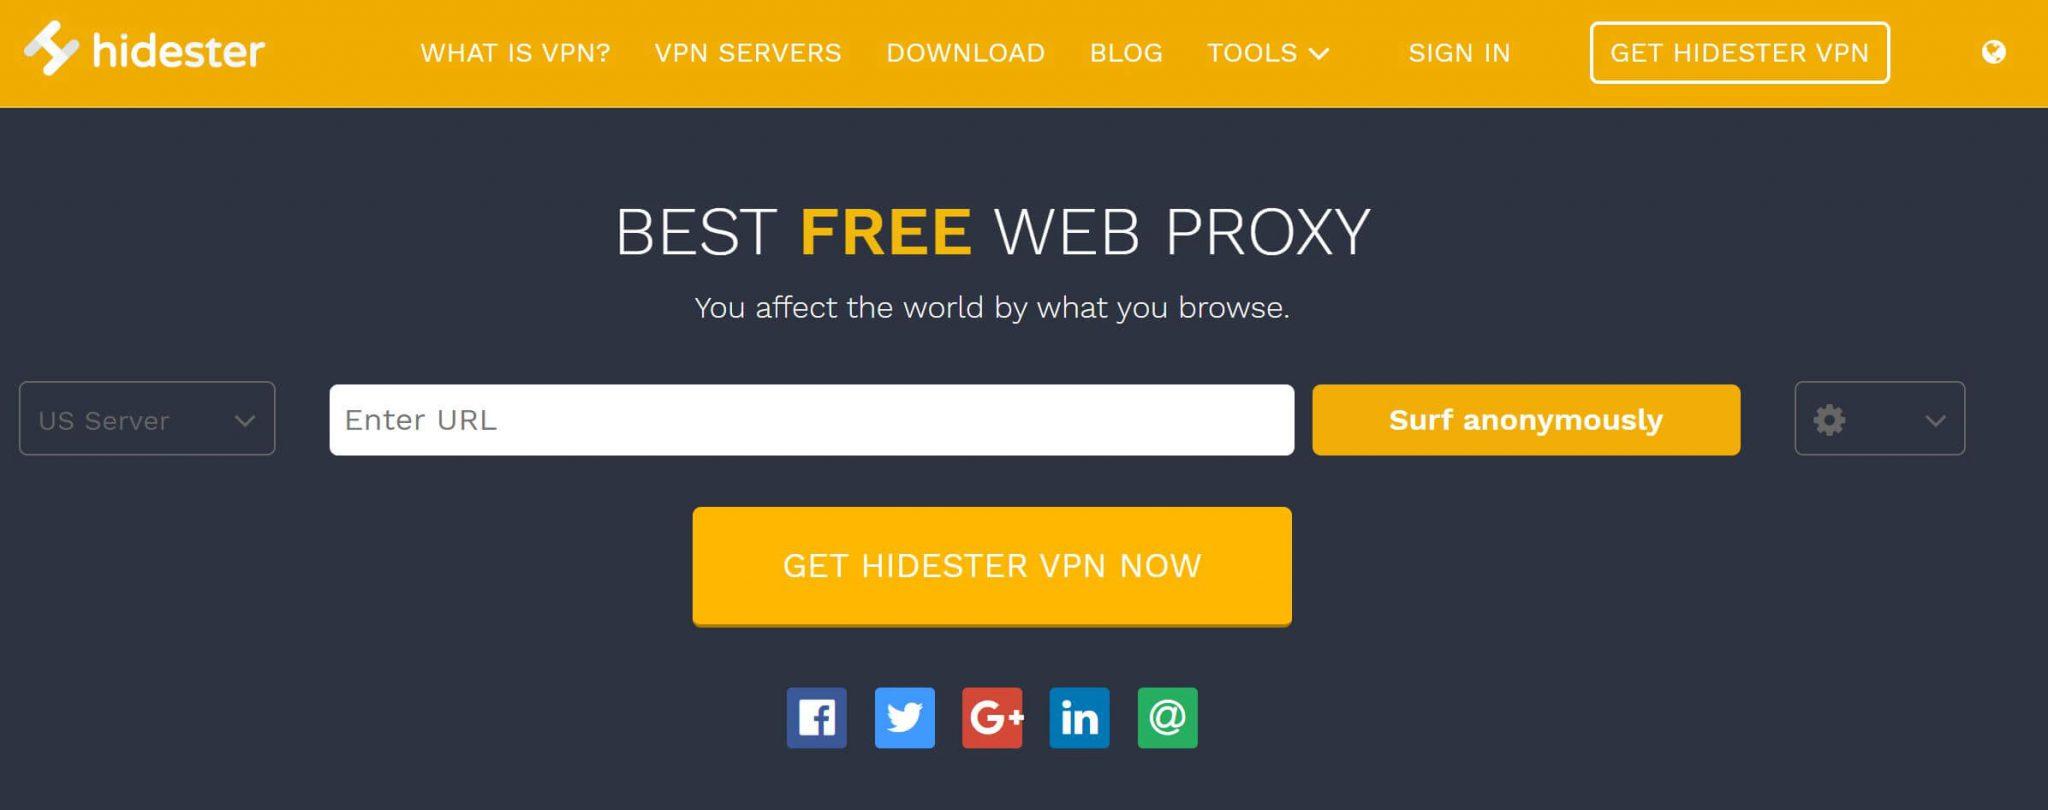 Mejores proxy gratis 2021 - webs, servidores y programas